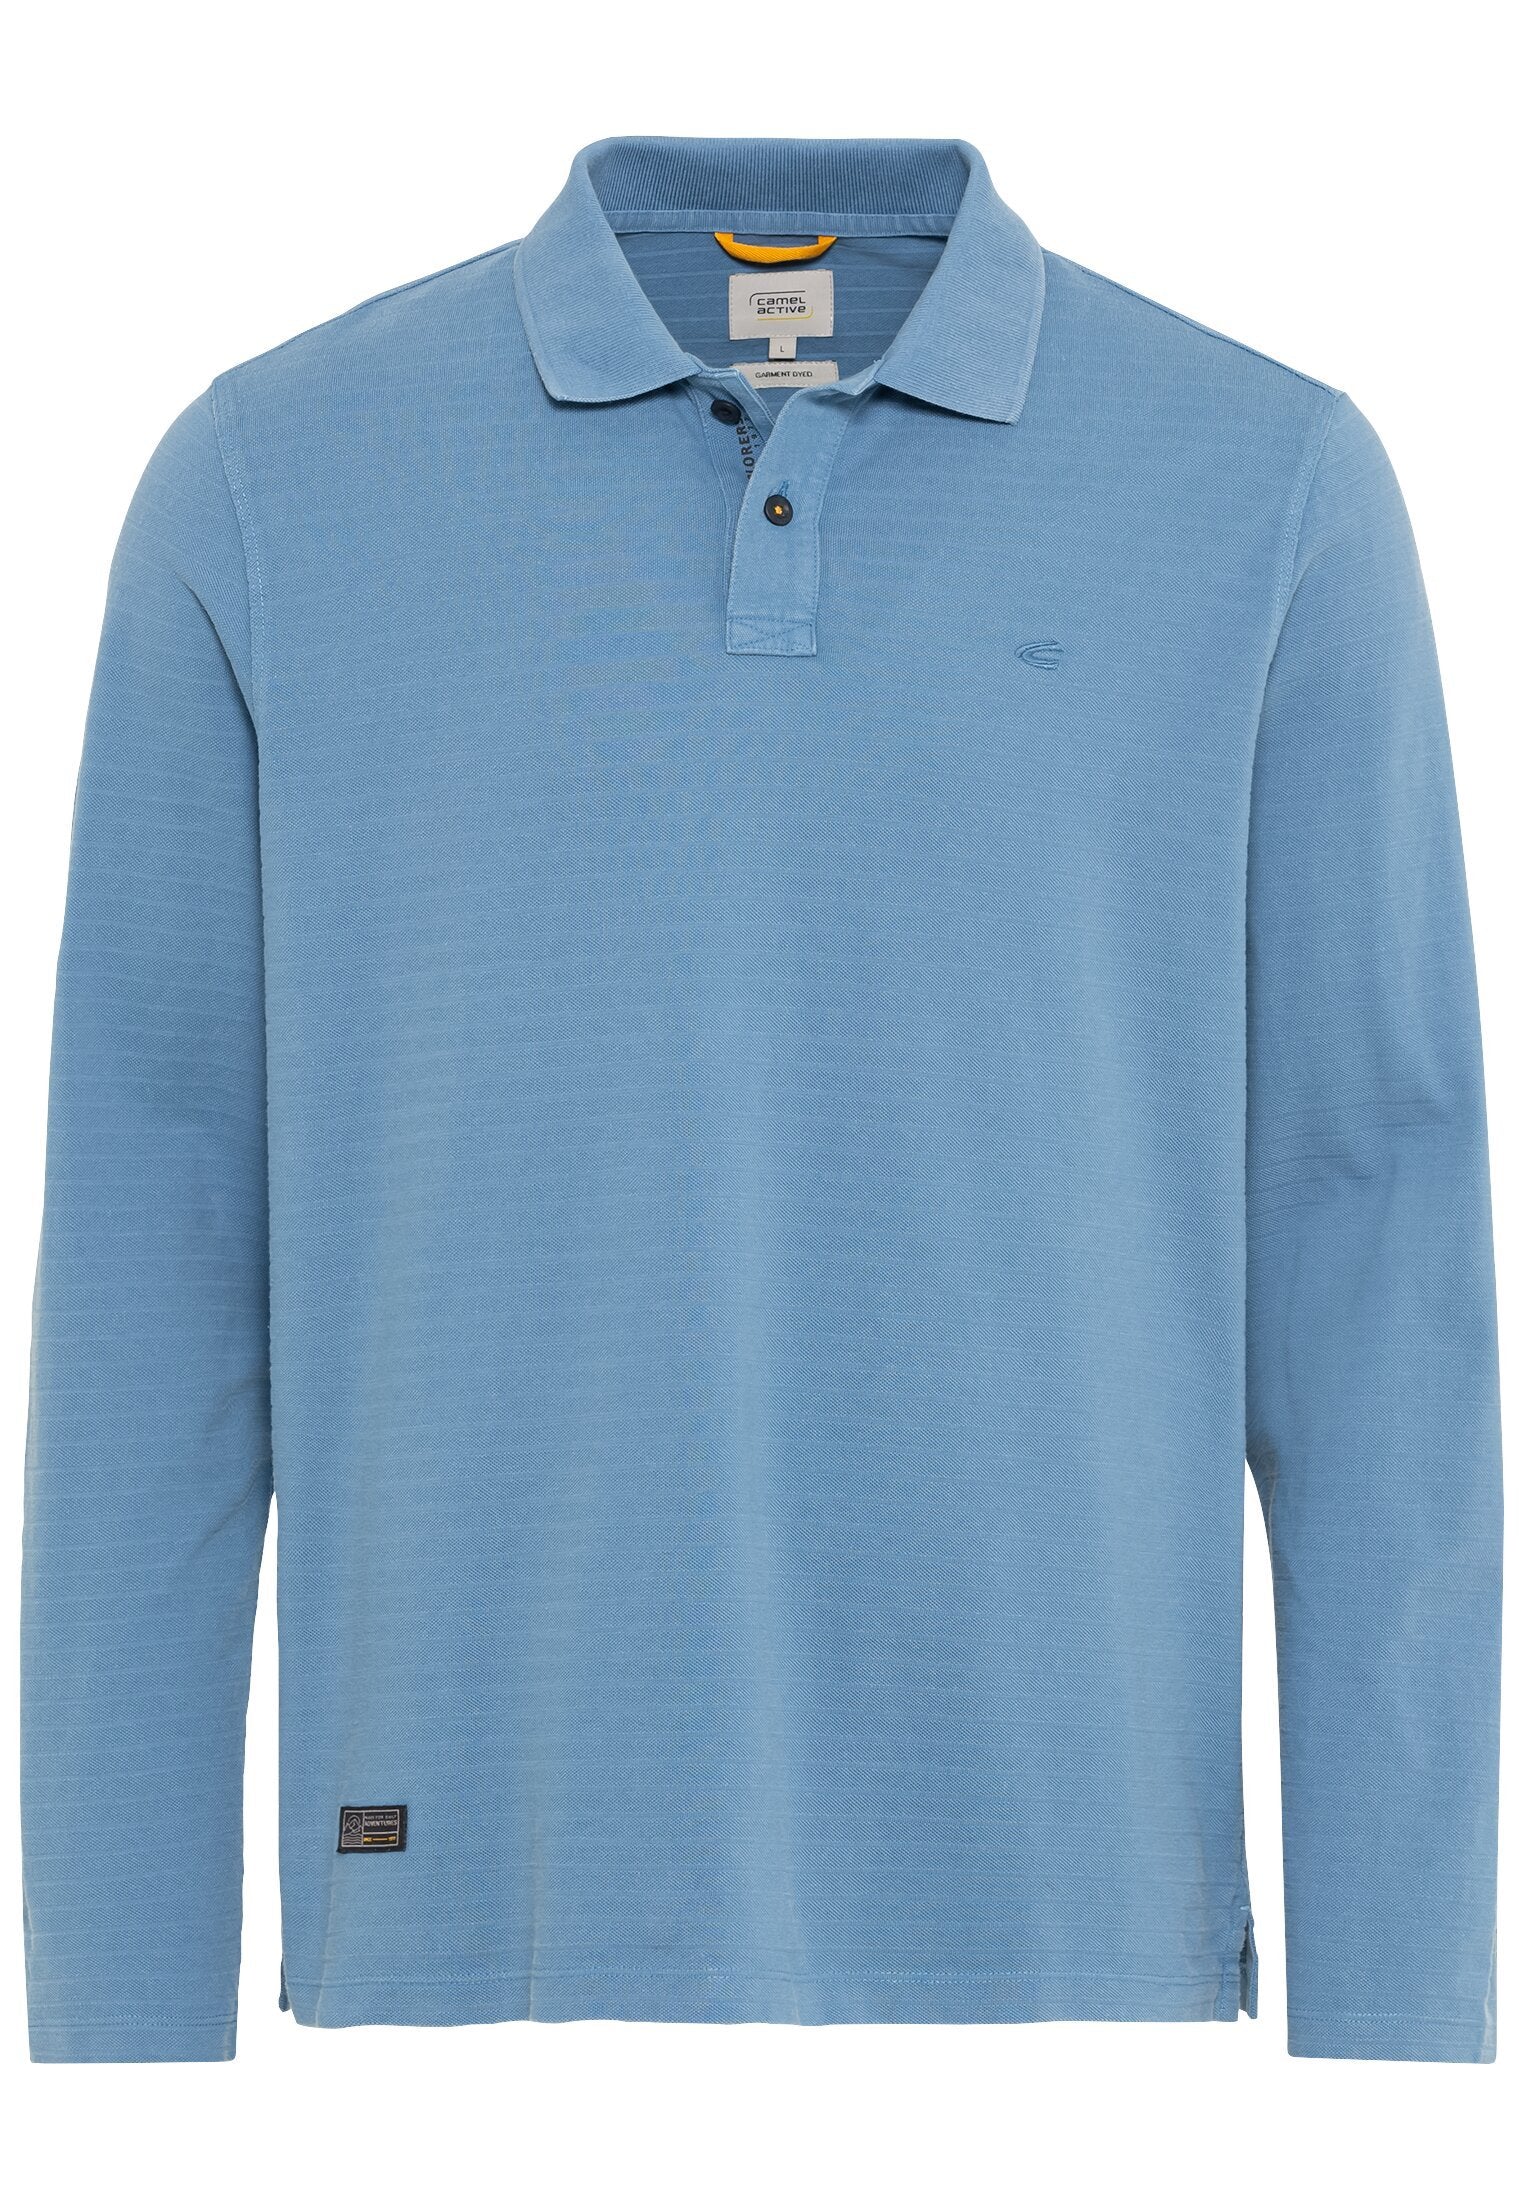 Langarm-Poloshirt aus reiner Baumwolle (Elemental Blue)